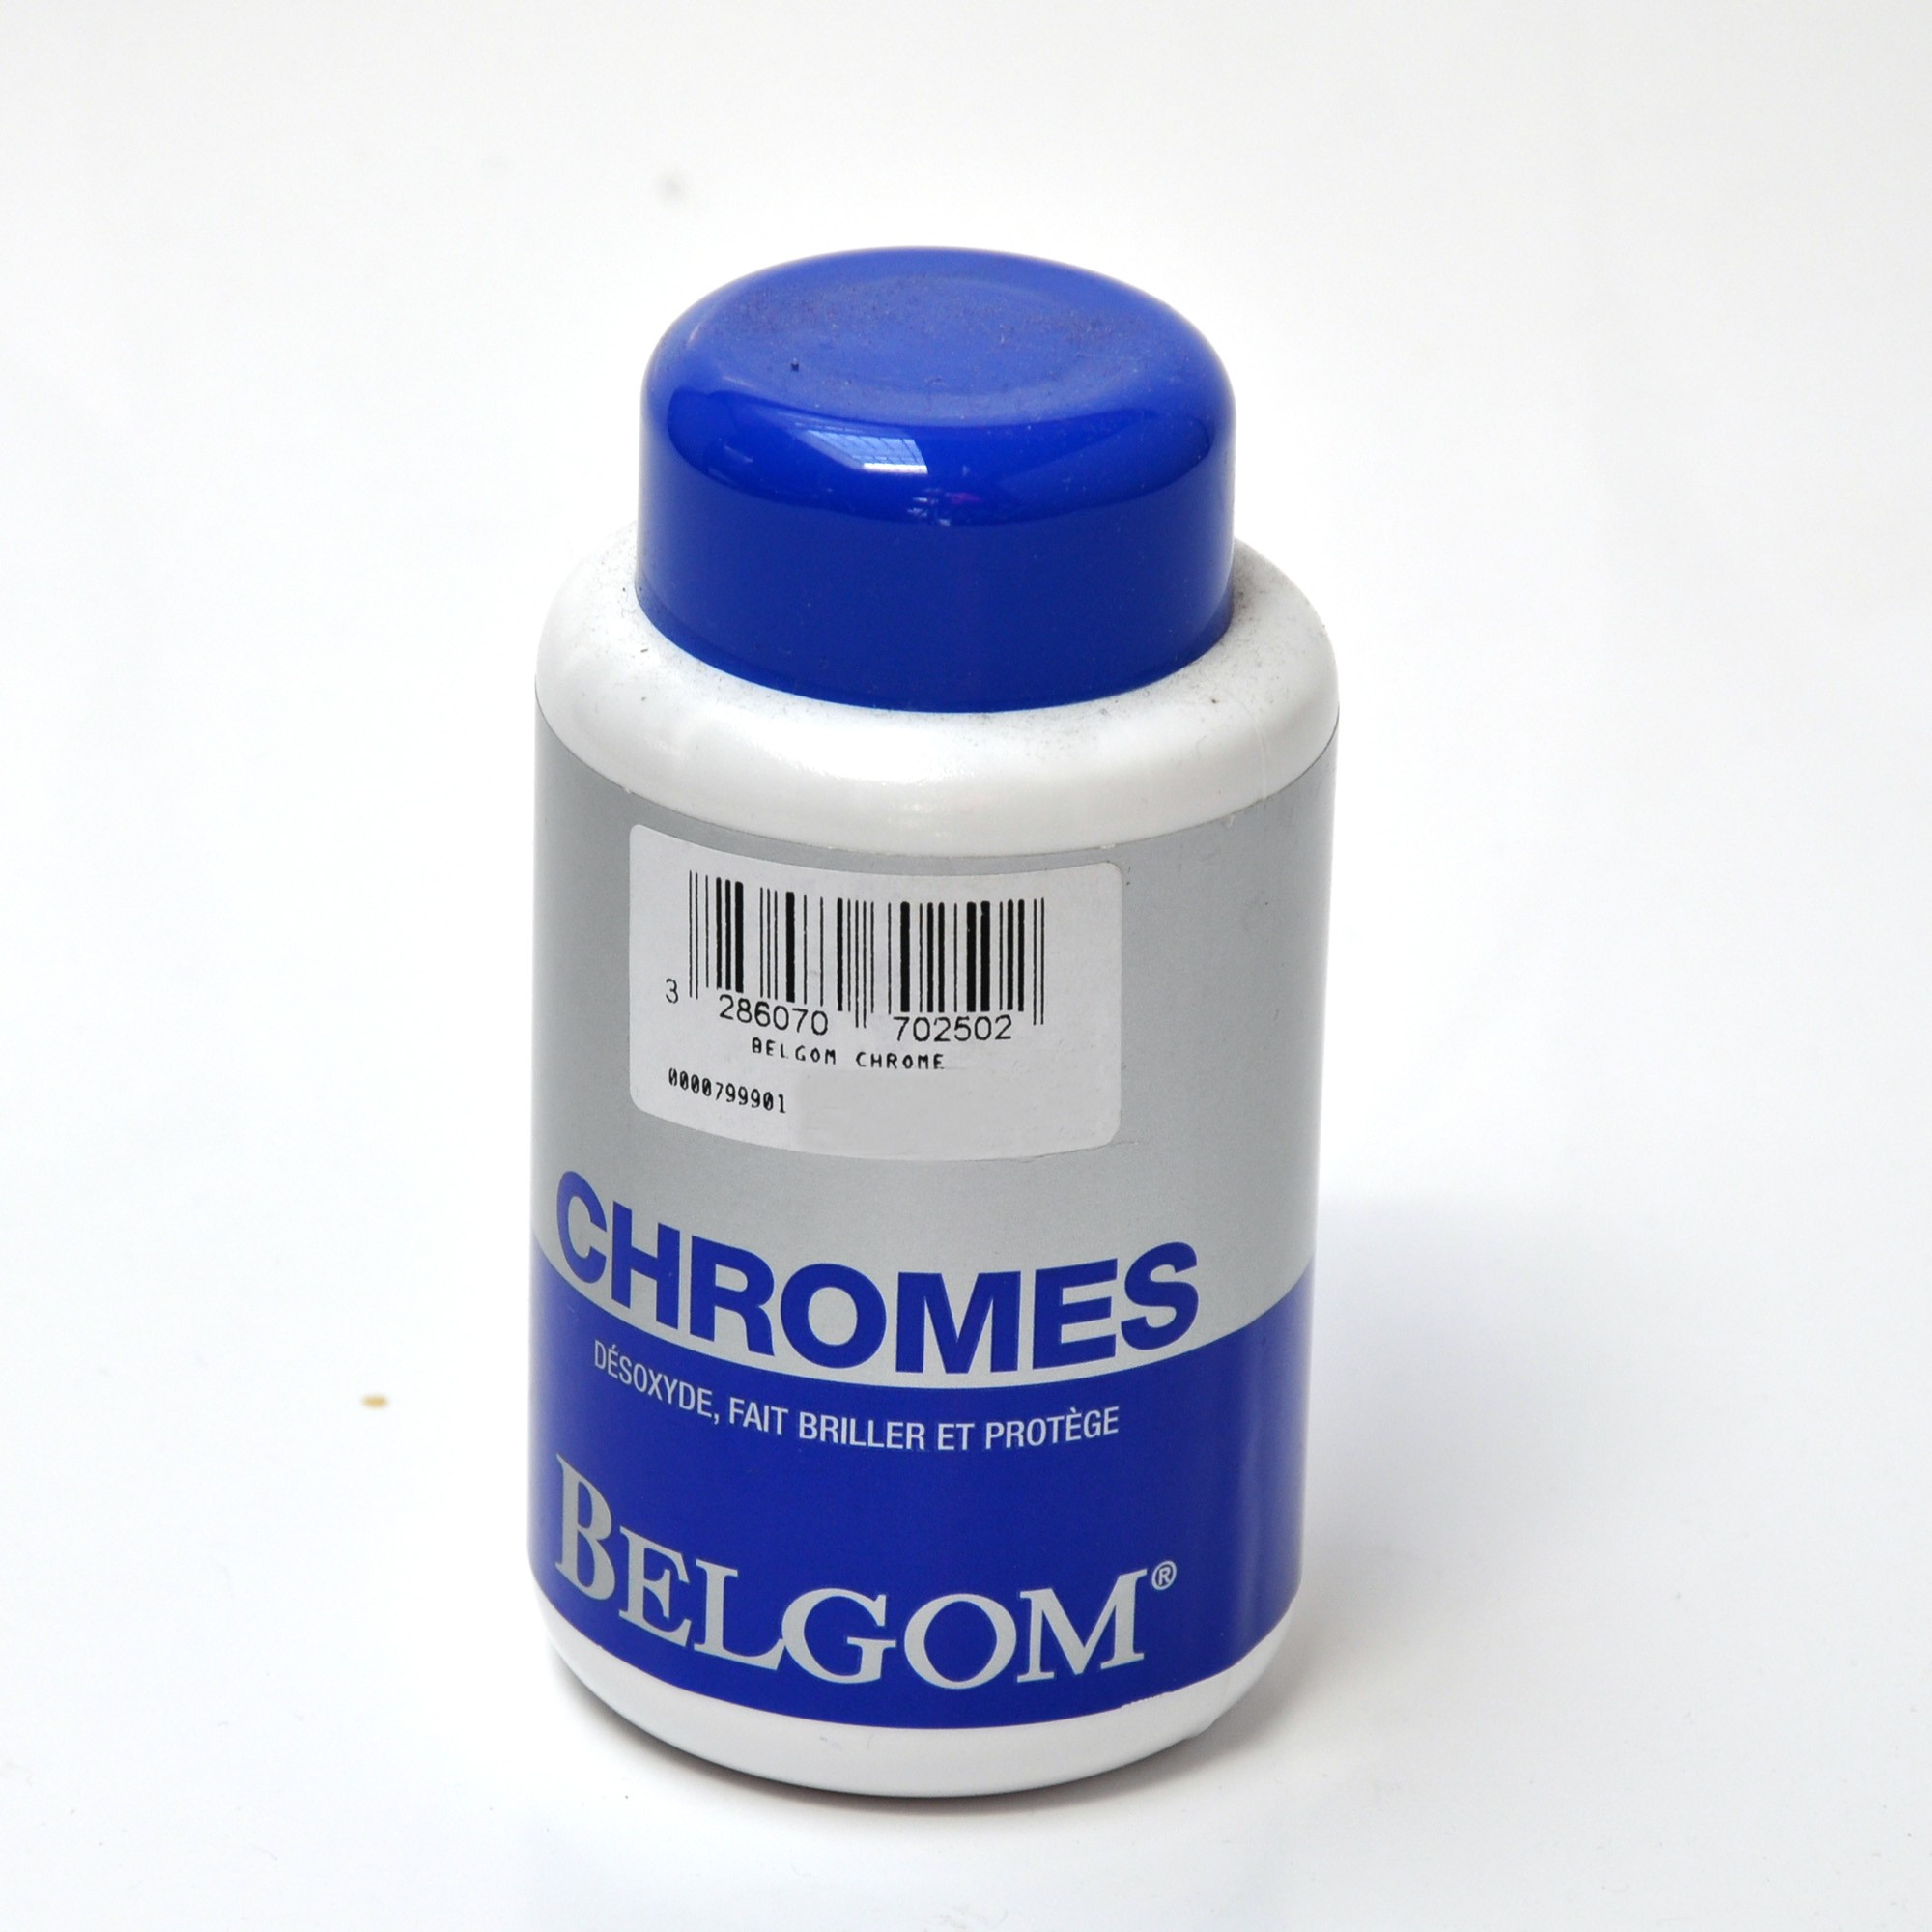 Belgom Chrome cleaner for CB500